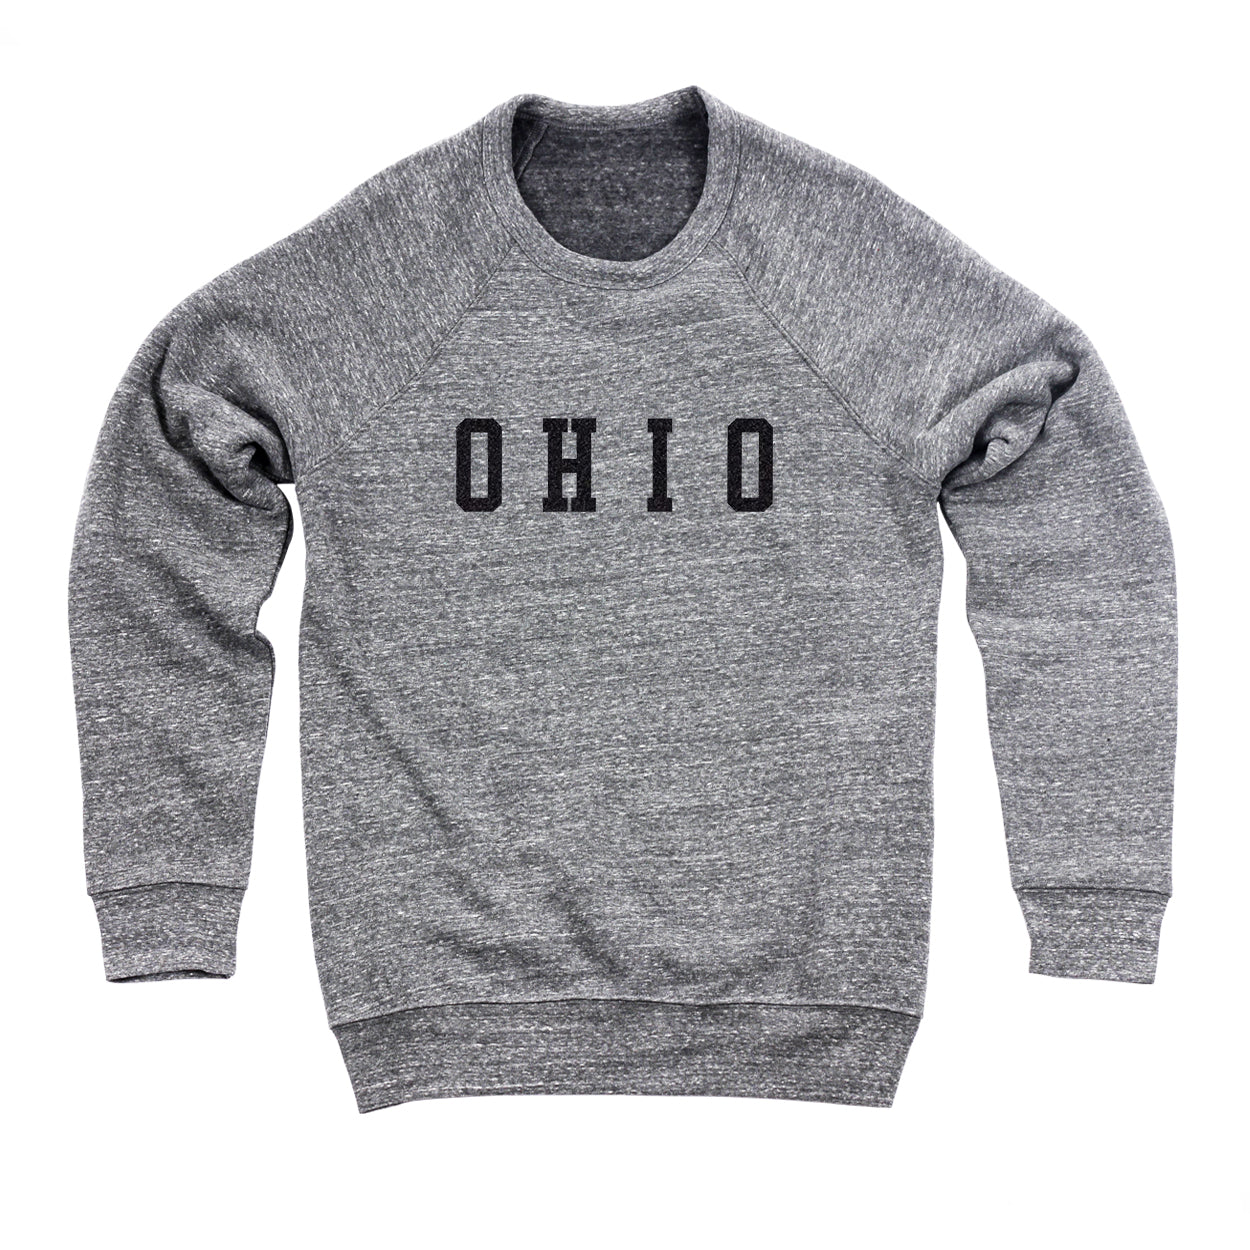 Ohio Varsity Black Flock Ultra Soft Sweatshirt - Clothe Ohio - Soft Ohio Shirts